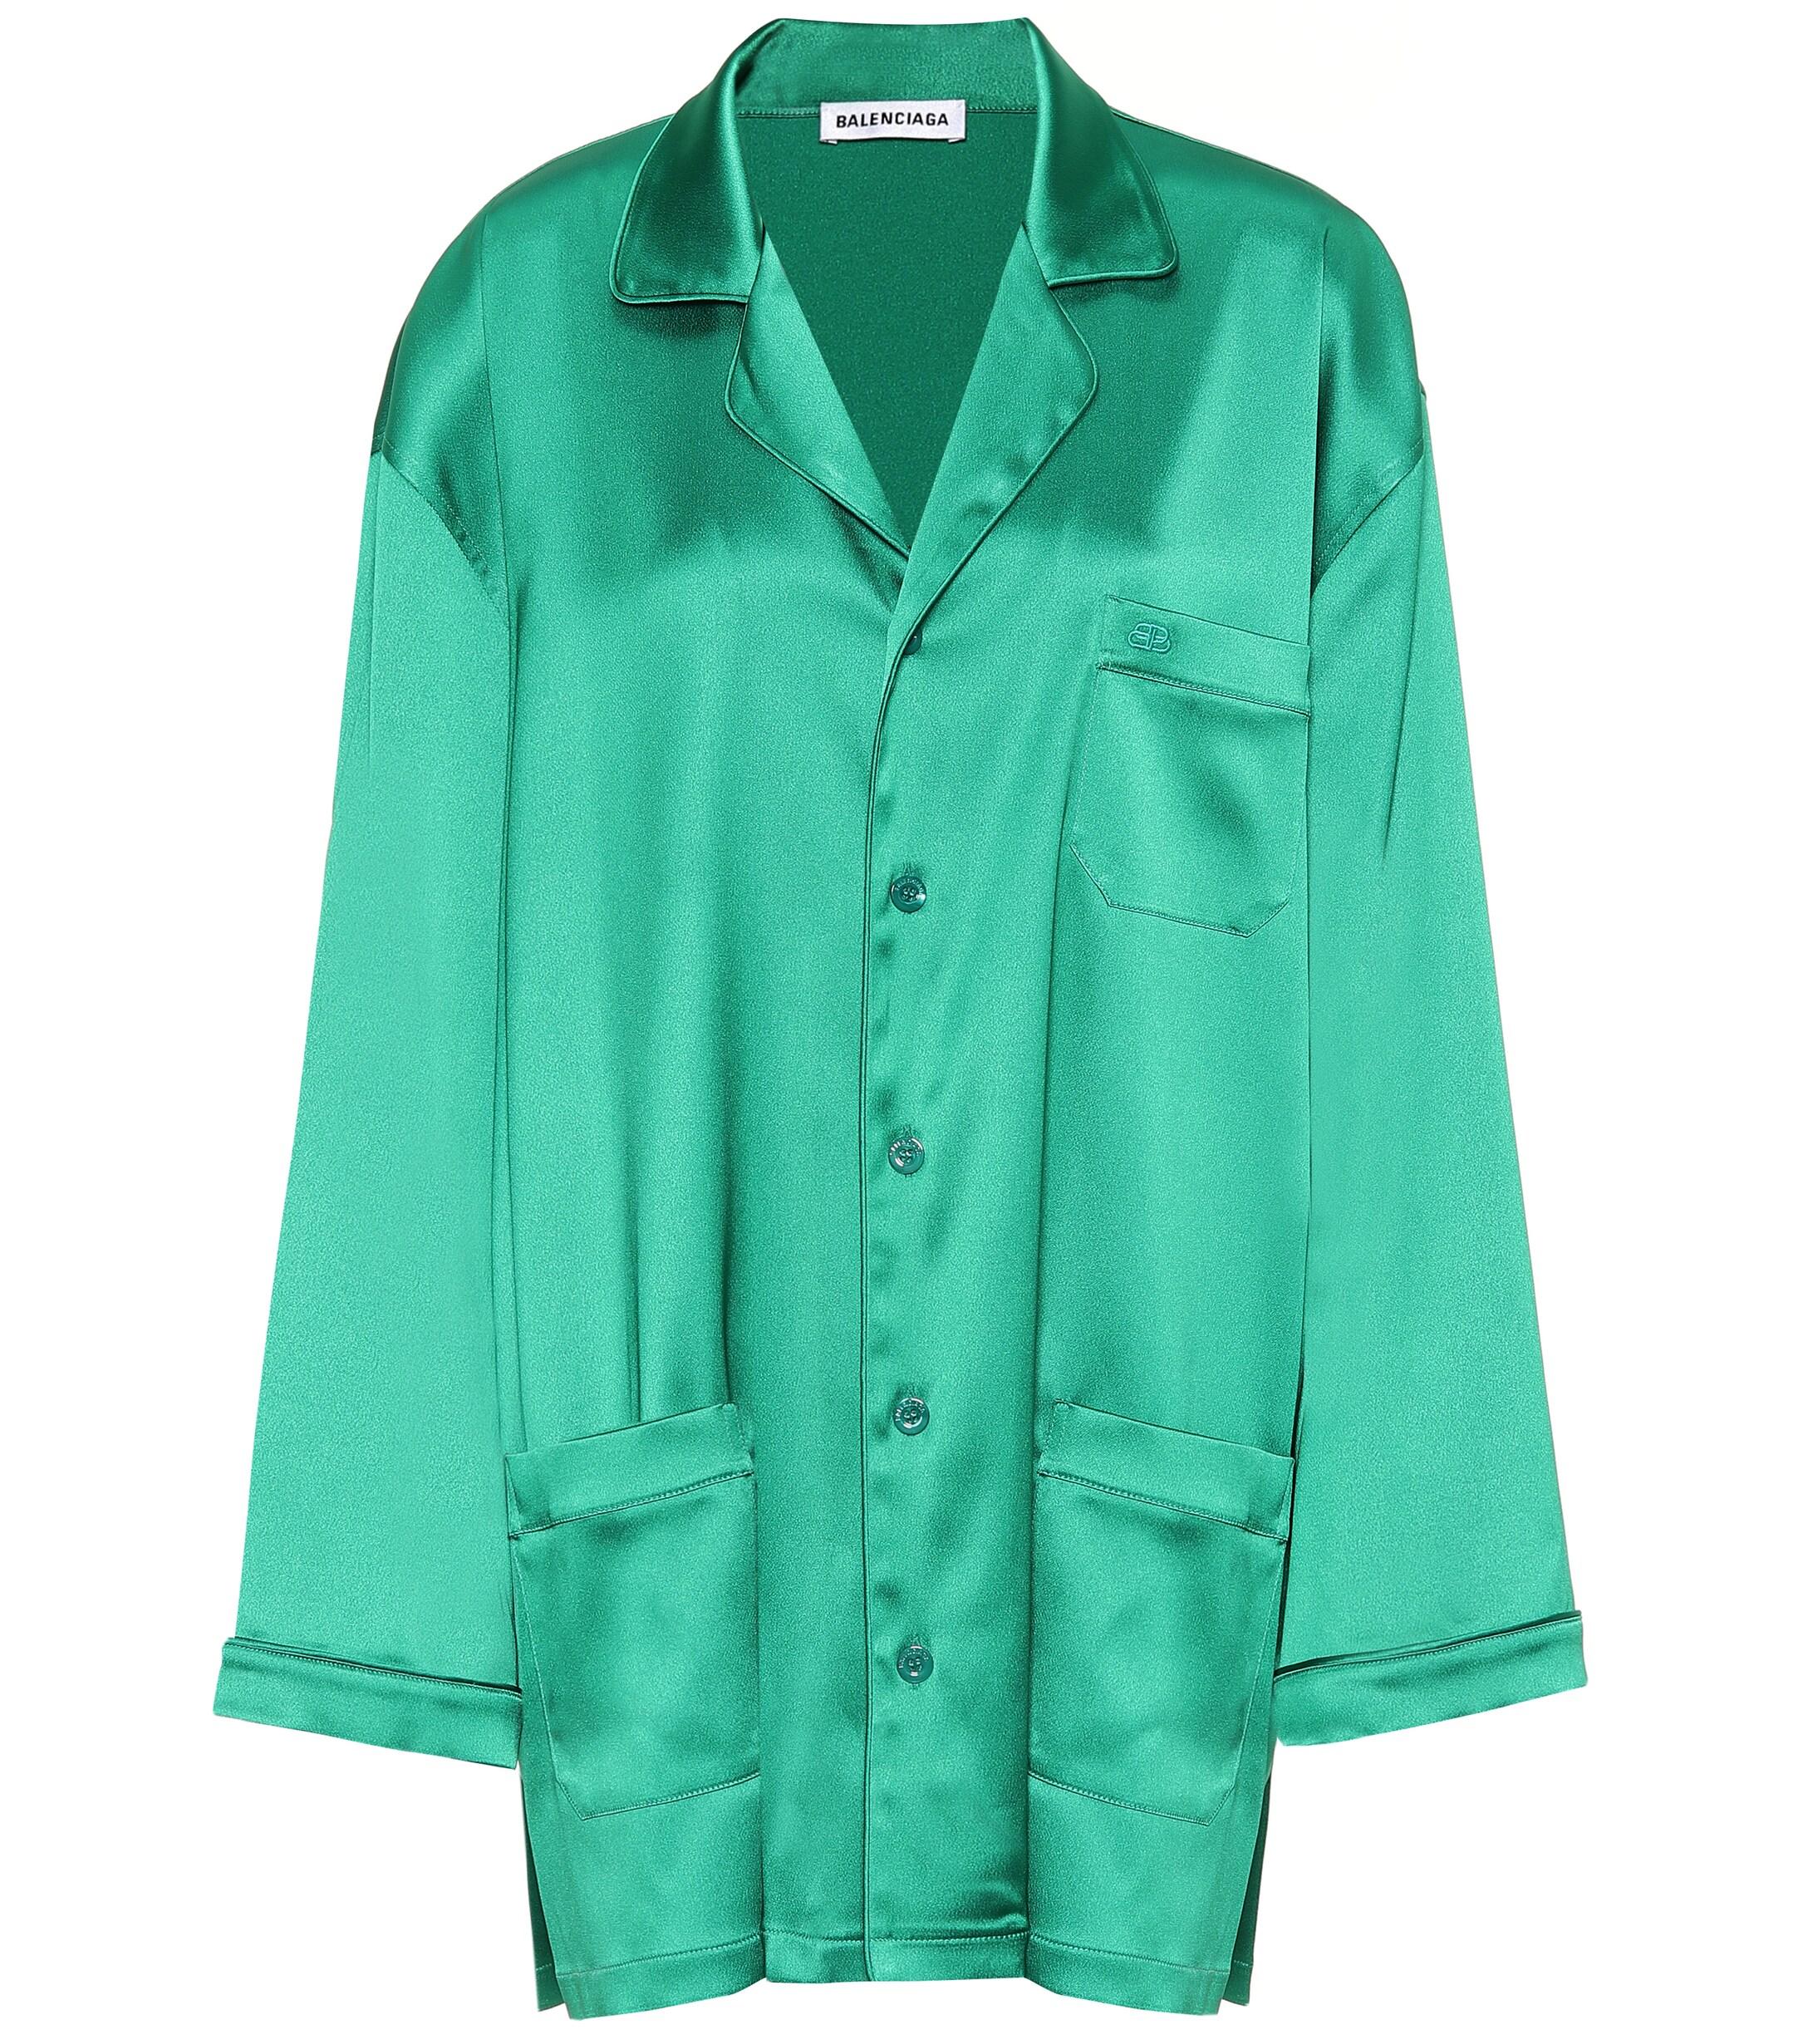 Balenciaga Oversized Satin Pajama Shirt in Green - Lyst